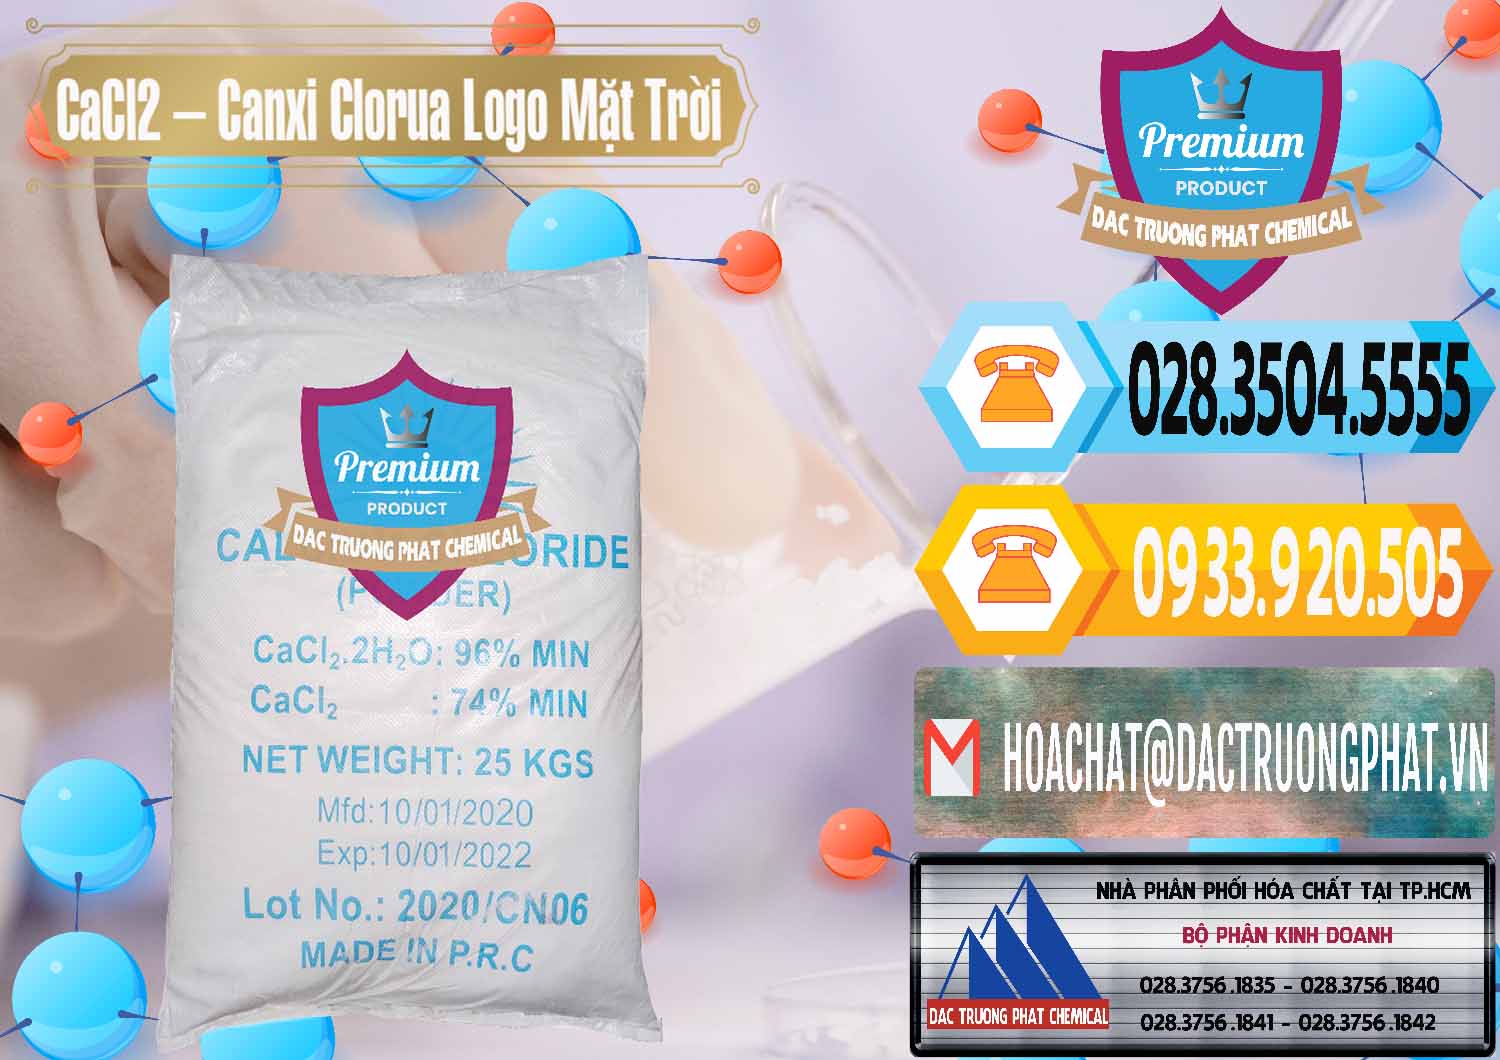 Nơi chuyên bán - cung ứng CaCl2 – Canxi Clorua 96% Logo Mặt Trời Trung Quốc China - 0041 - Nơi chuyên cung cấp và bán hóa chất tại TP.HCM - hoachattayrua.net